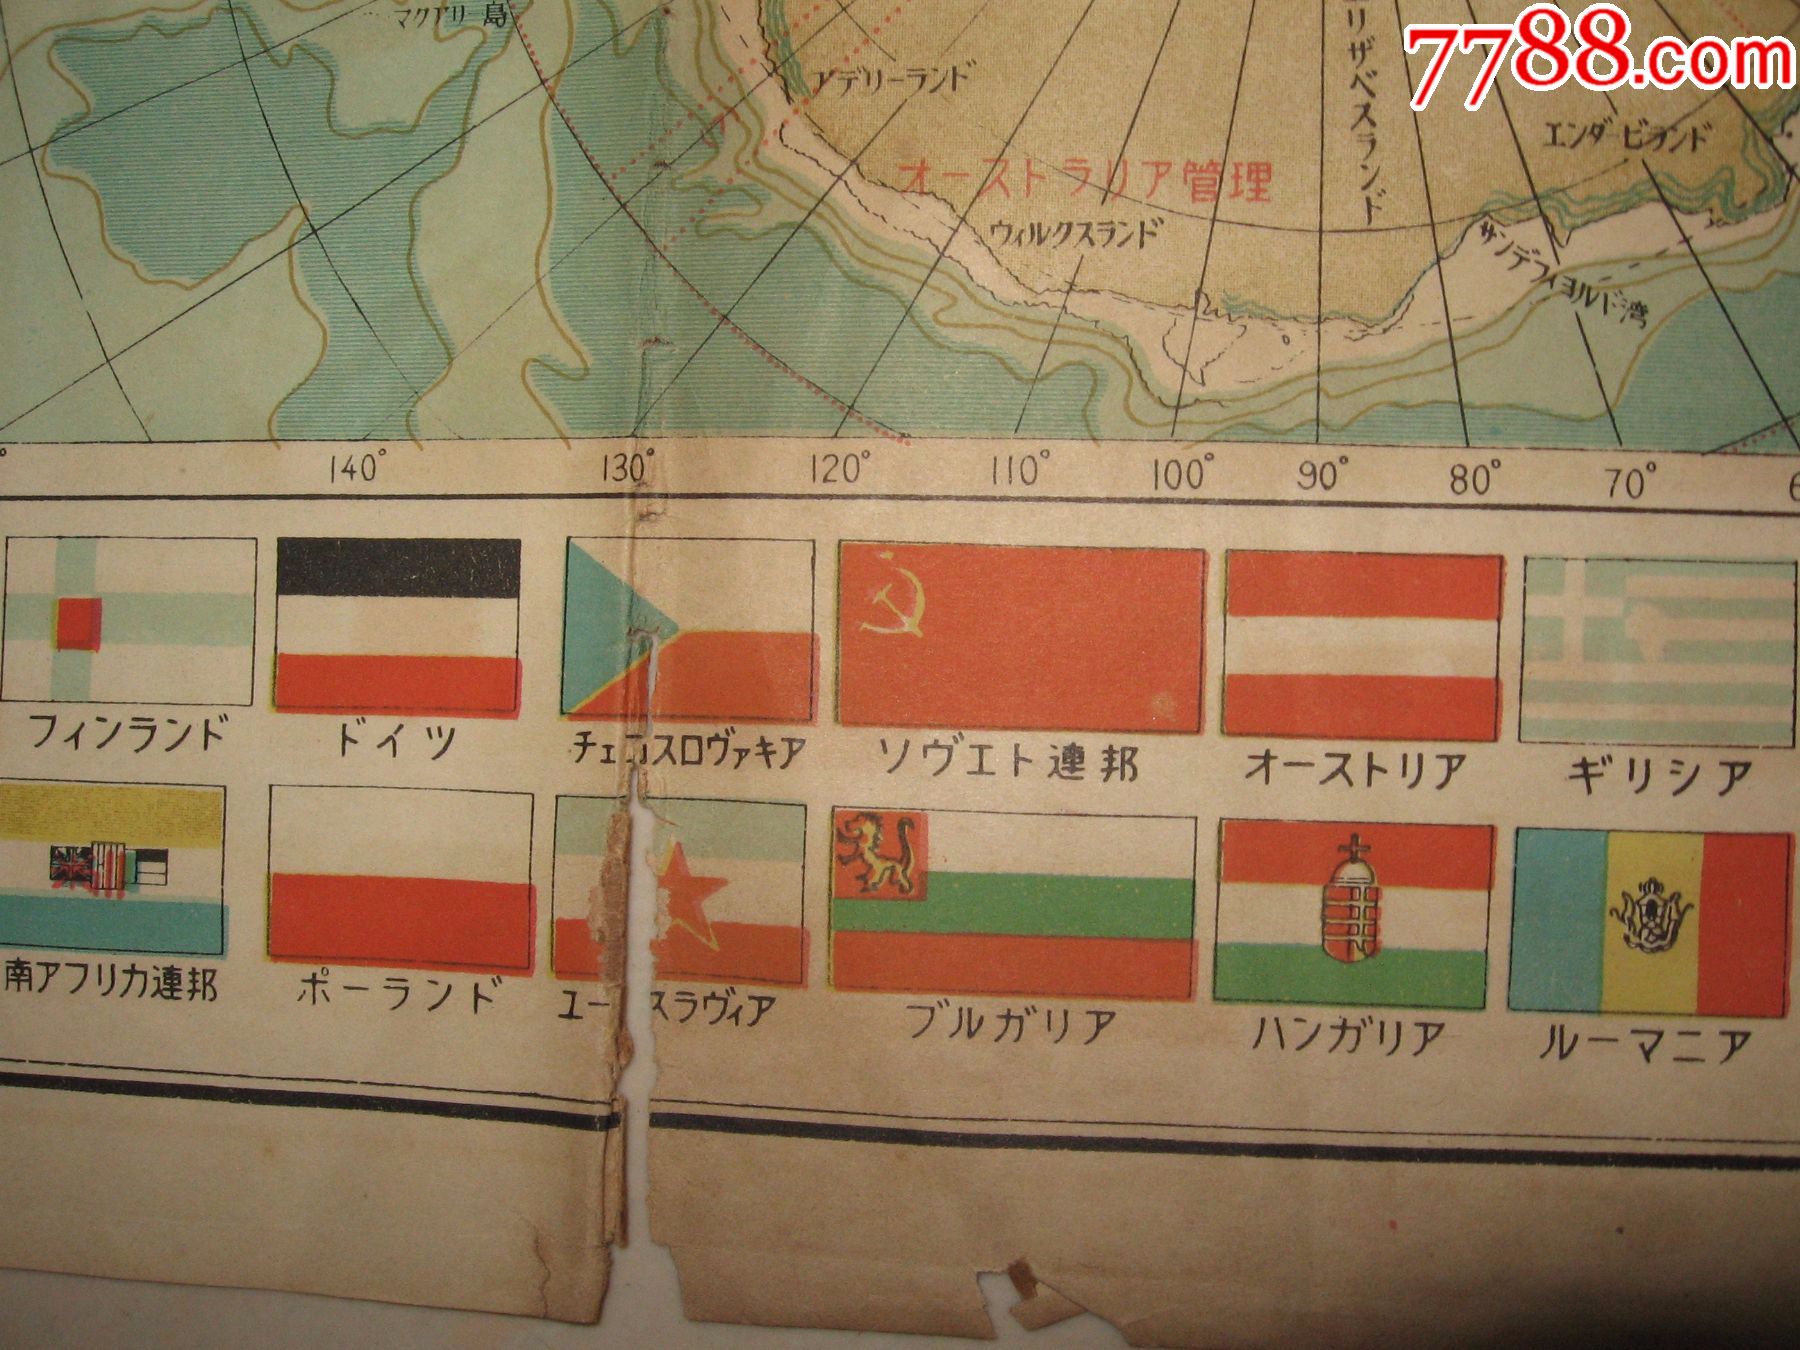 日本读卖新闻社出版最新世界大地图【朝鲜半岛三八线】附世界各国国旗